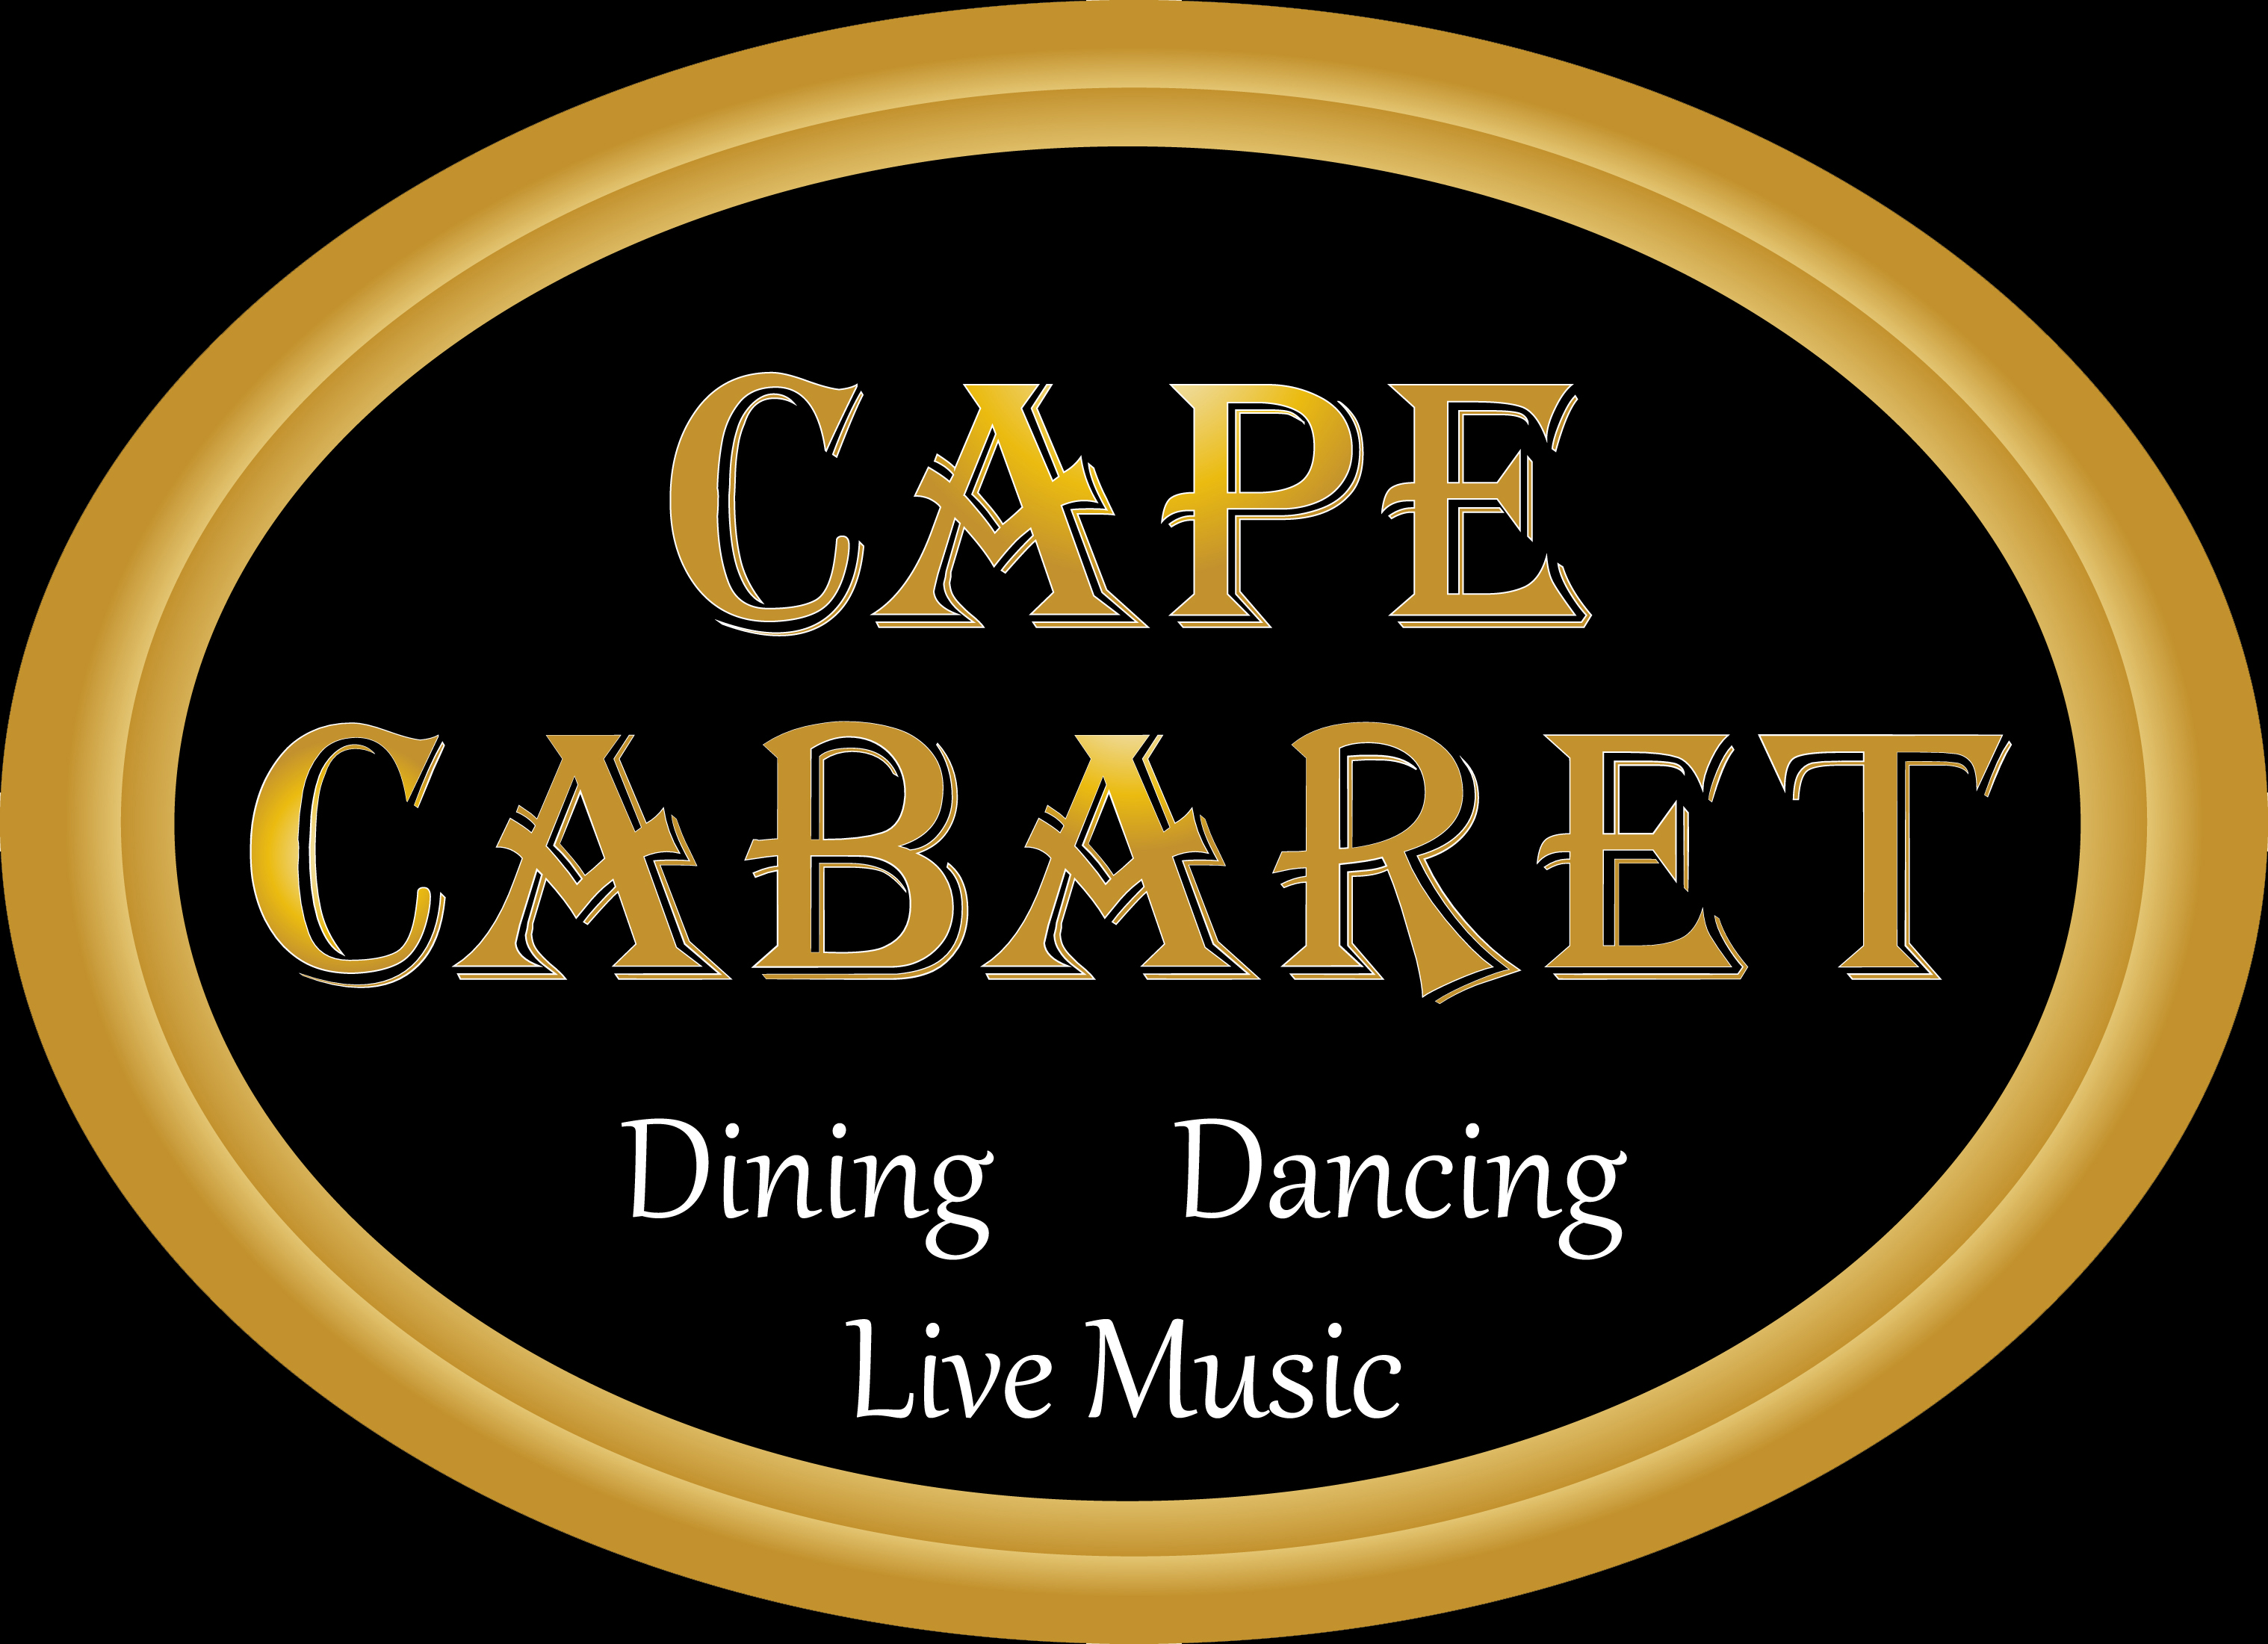 Cape Cabaret